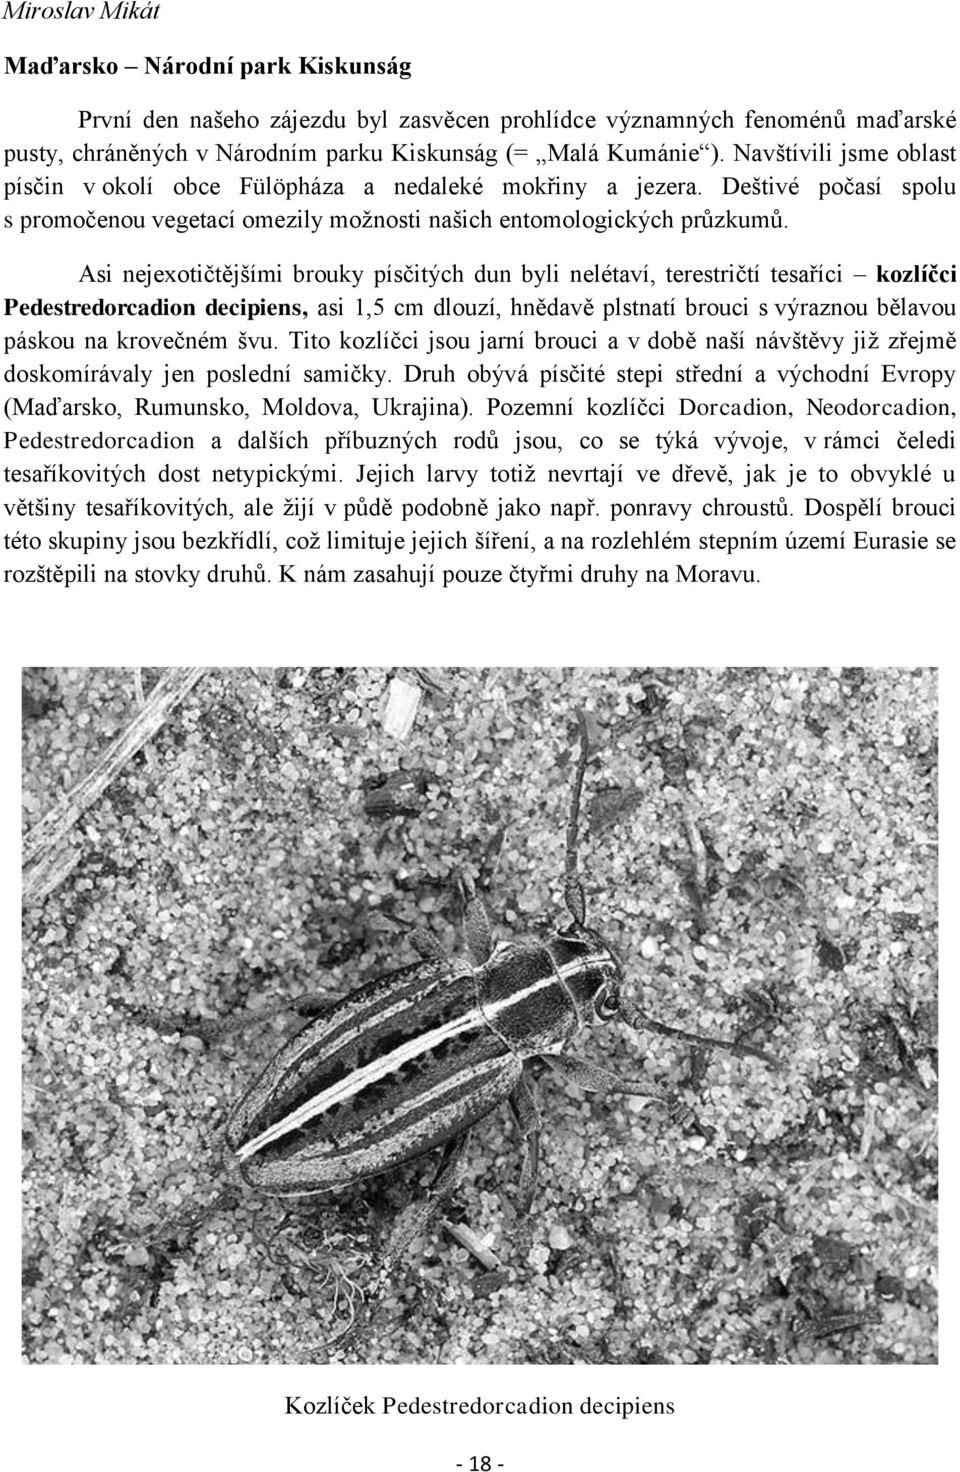 Asi nejexotičtějšími brouky písčitých dun byli nelétaví, terestričtí tesaříci kozlíčci Pedestredorcadion decipiens, asi 1,5 cm dlouzí, hnědavě plstnatí brouci s výraznou bělavou páskou na krovečném